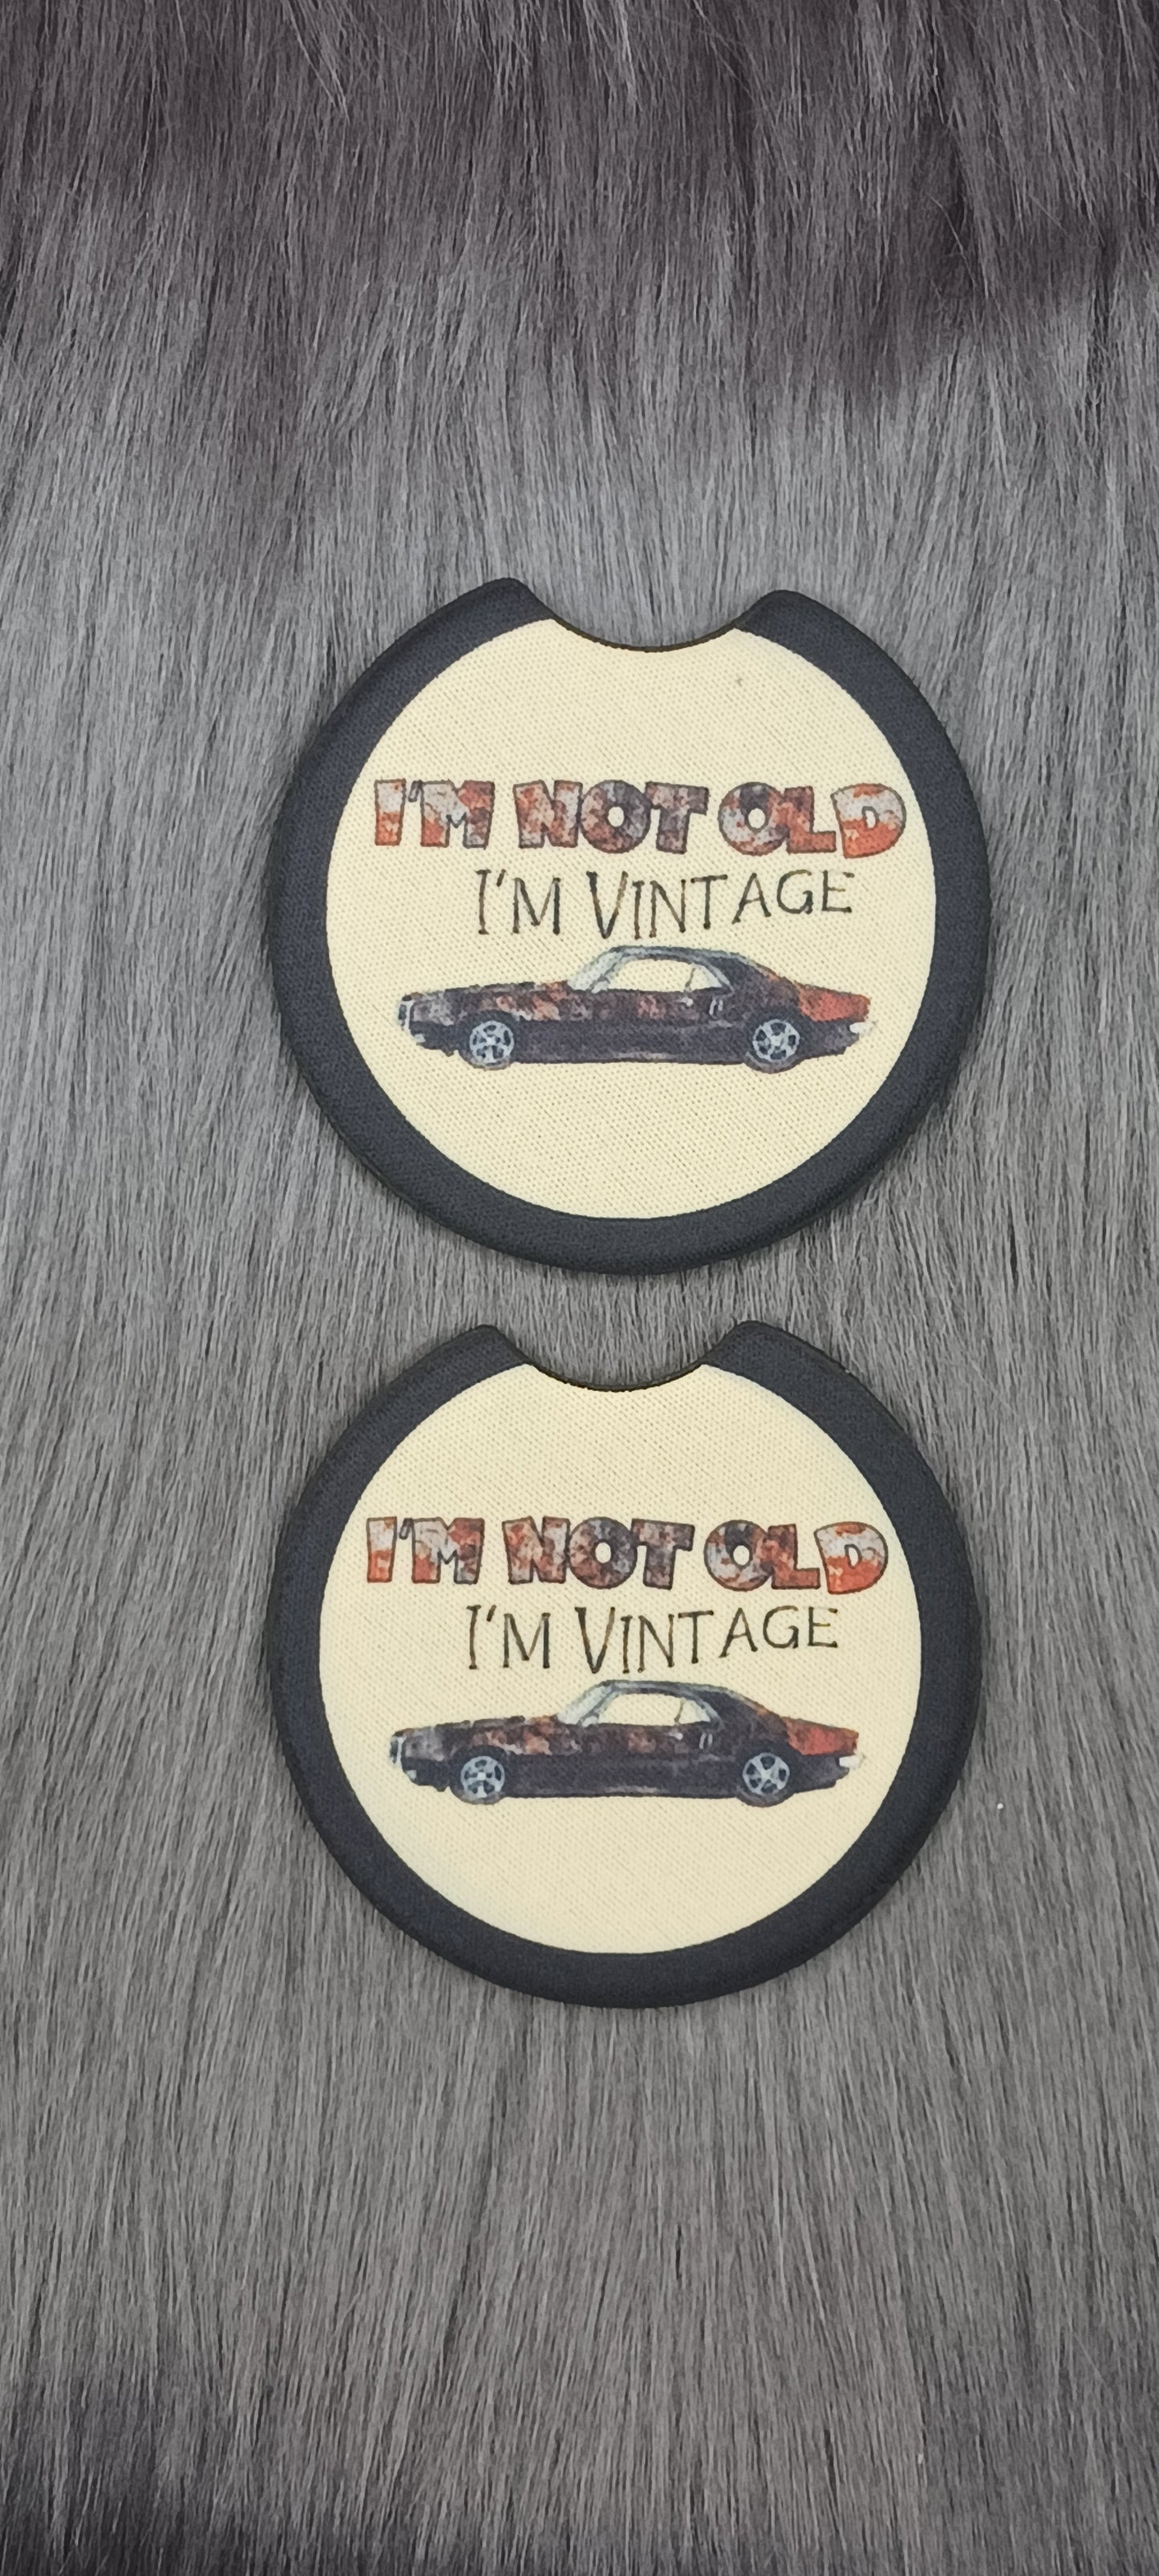 Vintage car coasters